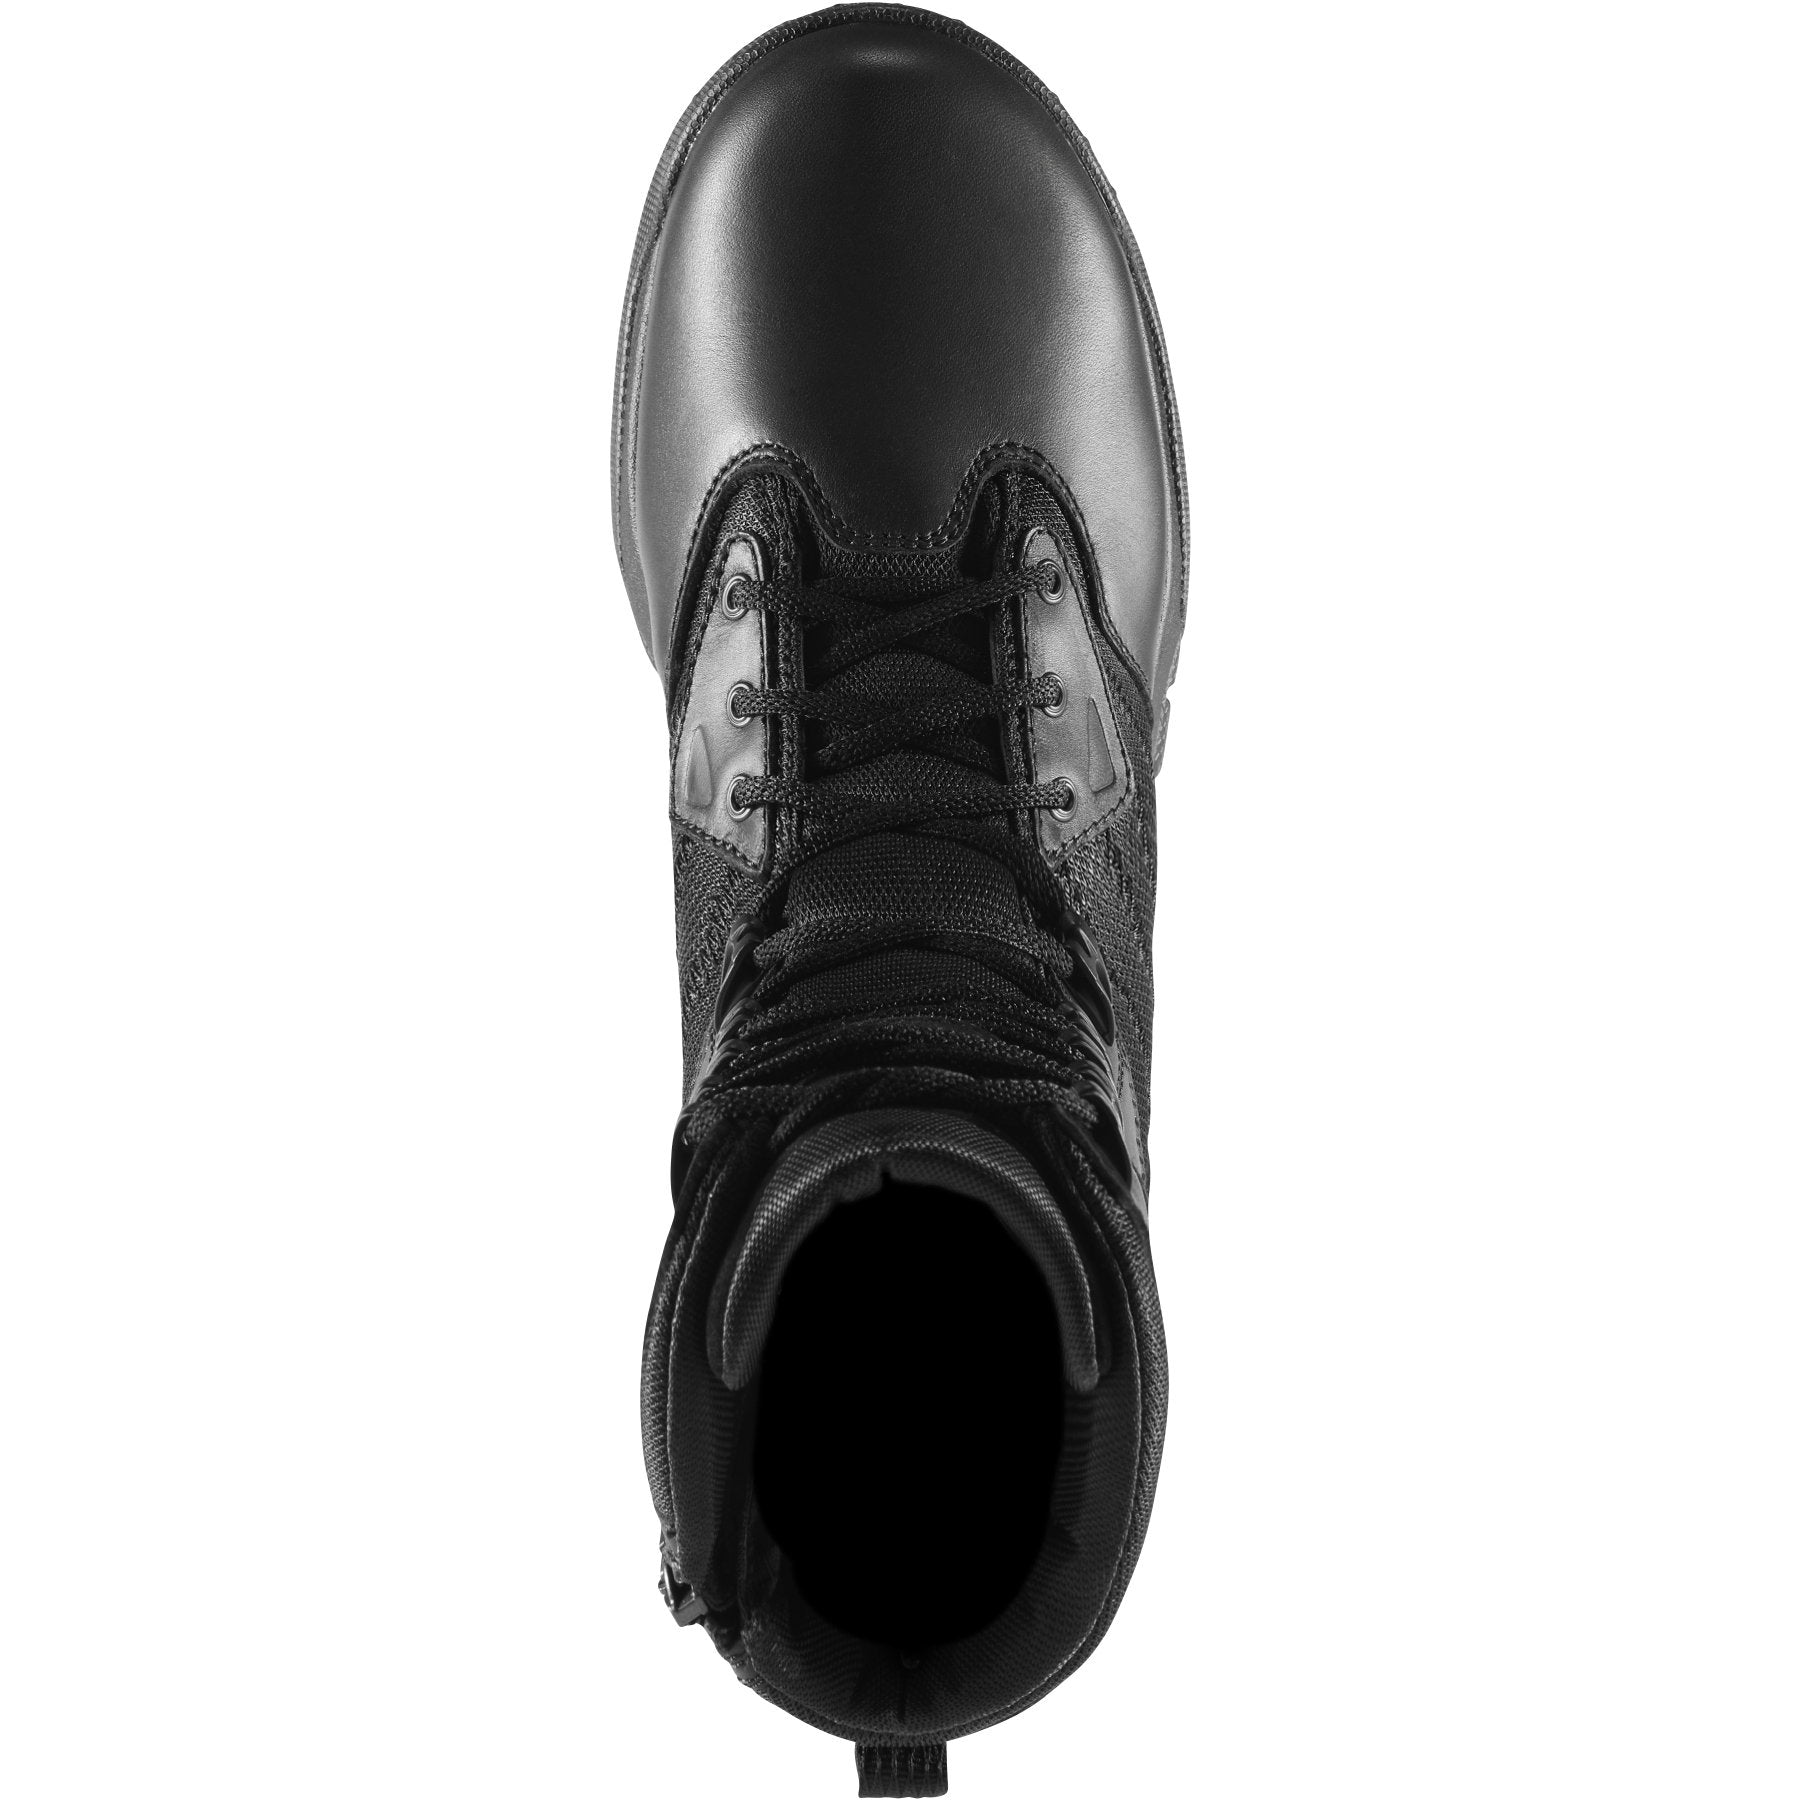 Danner Men's Instinct Tactical 8" WP 400G Side-Zip Boot- Black - 25332  - Overlook Boots